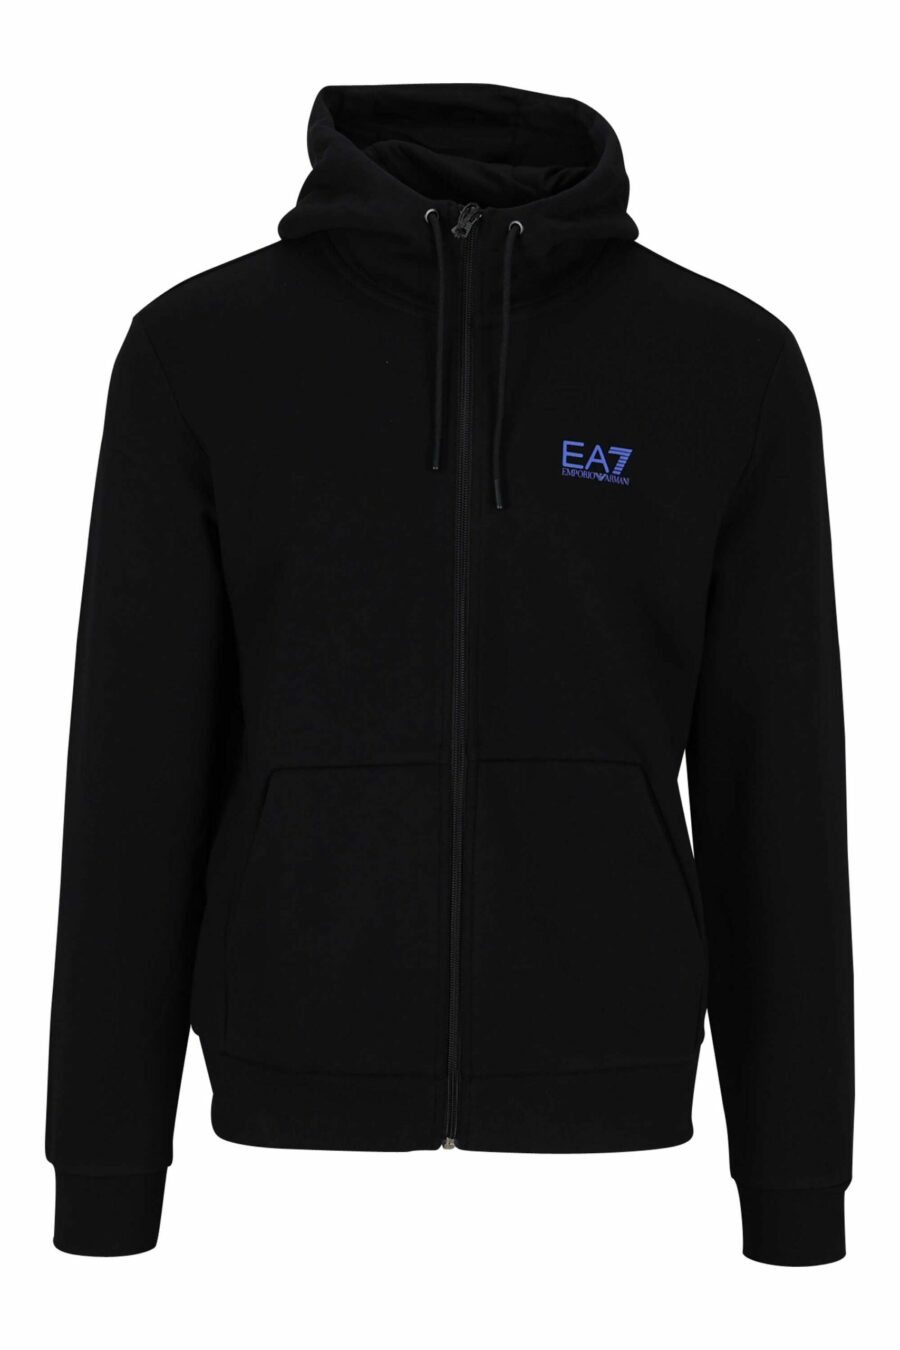 Sweat noir zippé avec capuche et mini logo "lux identity" - 8057767624941 scaled